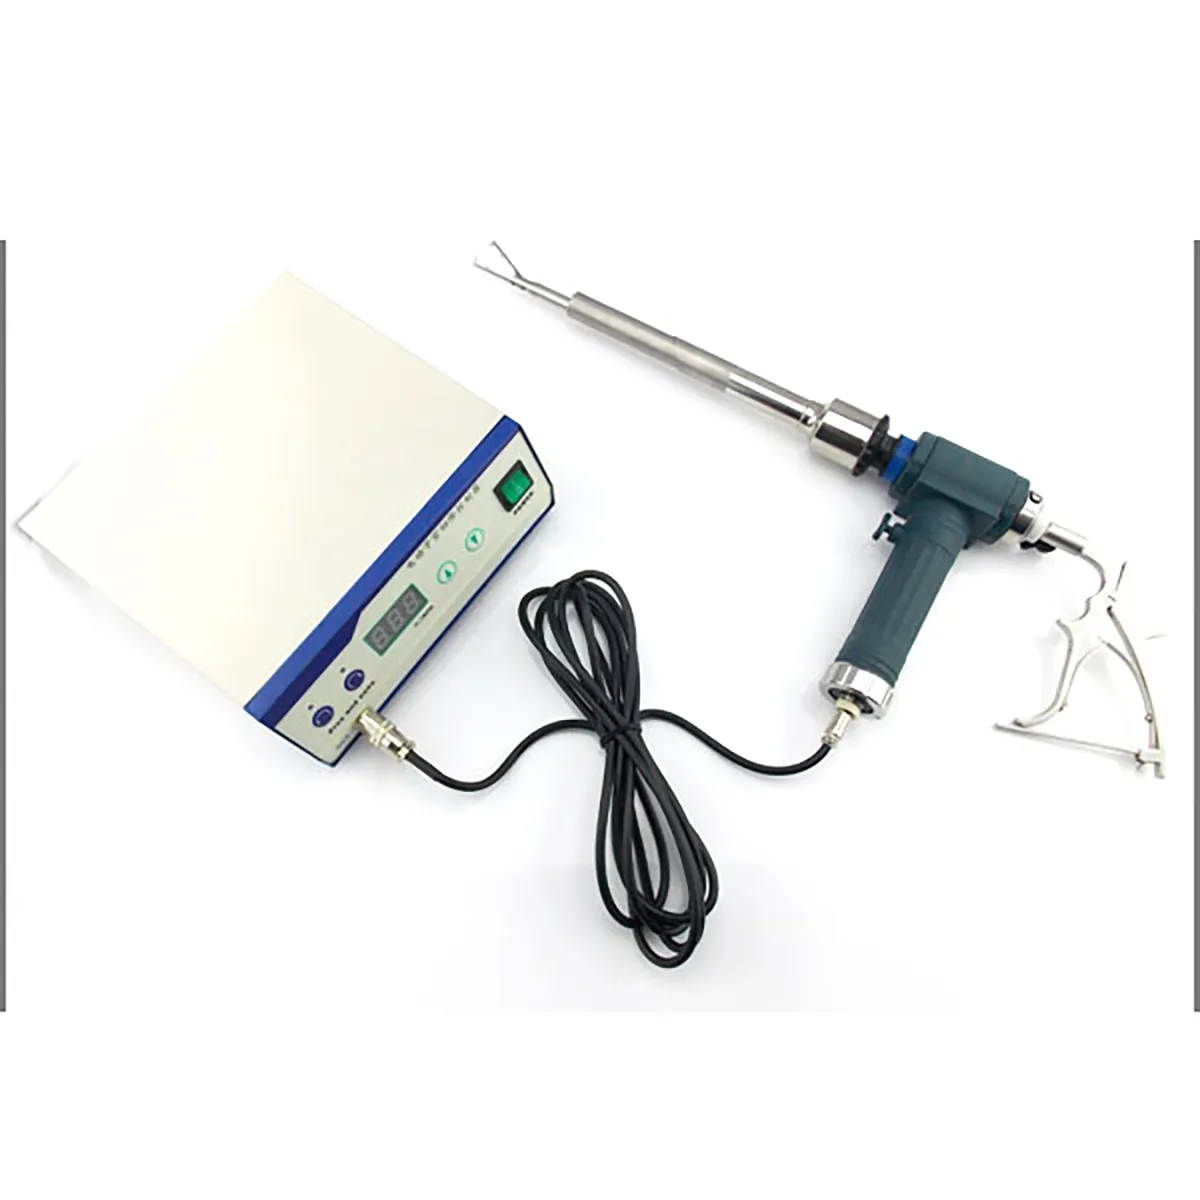 Morcellator Rahim Elektrik Yang Mudah Digunakan untuk Operasi Wanita/Pisau Bedah Ultrasonik untuk Medis MSLBBP1328